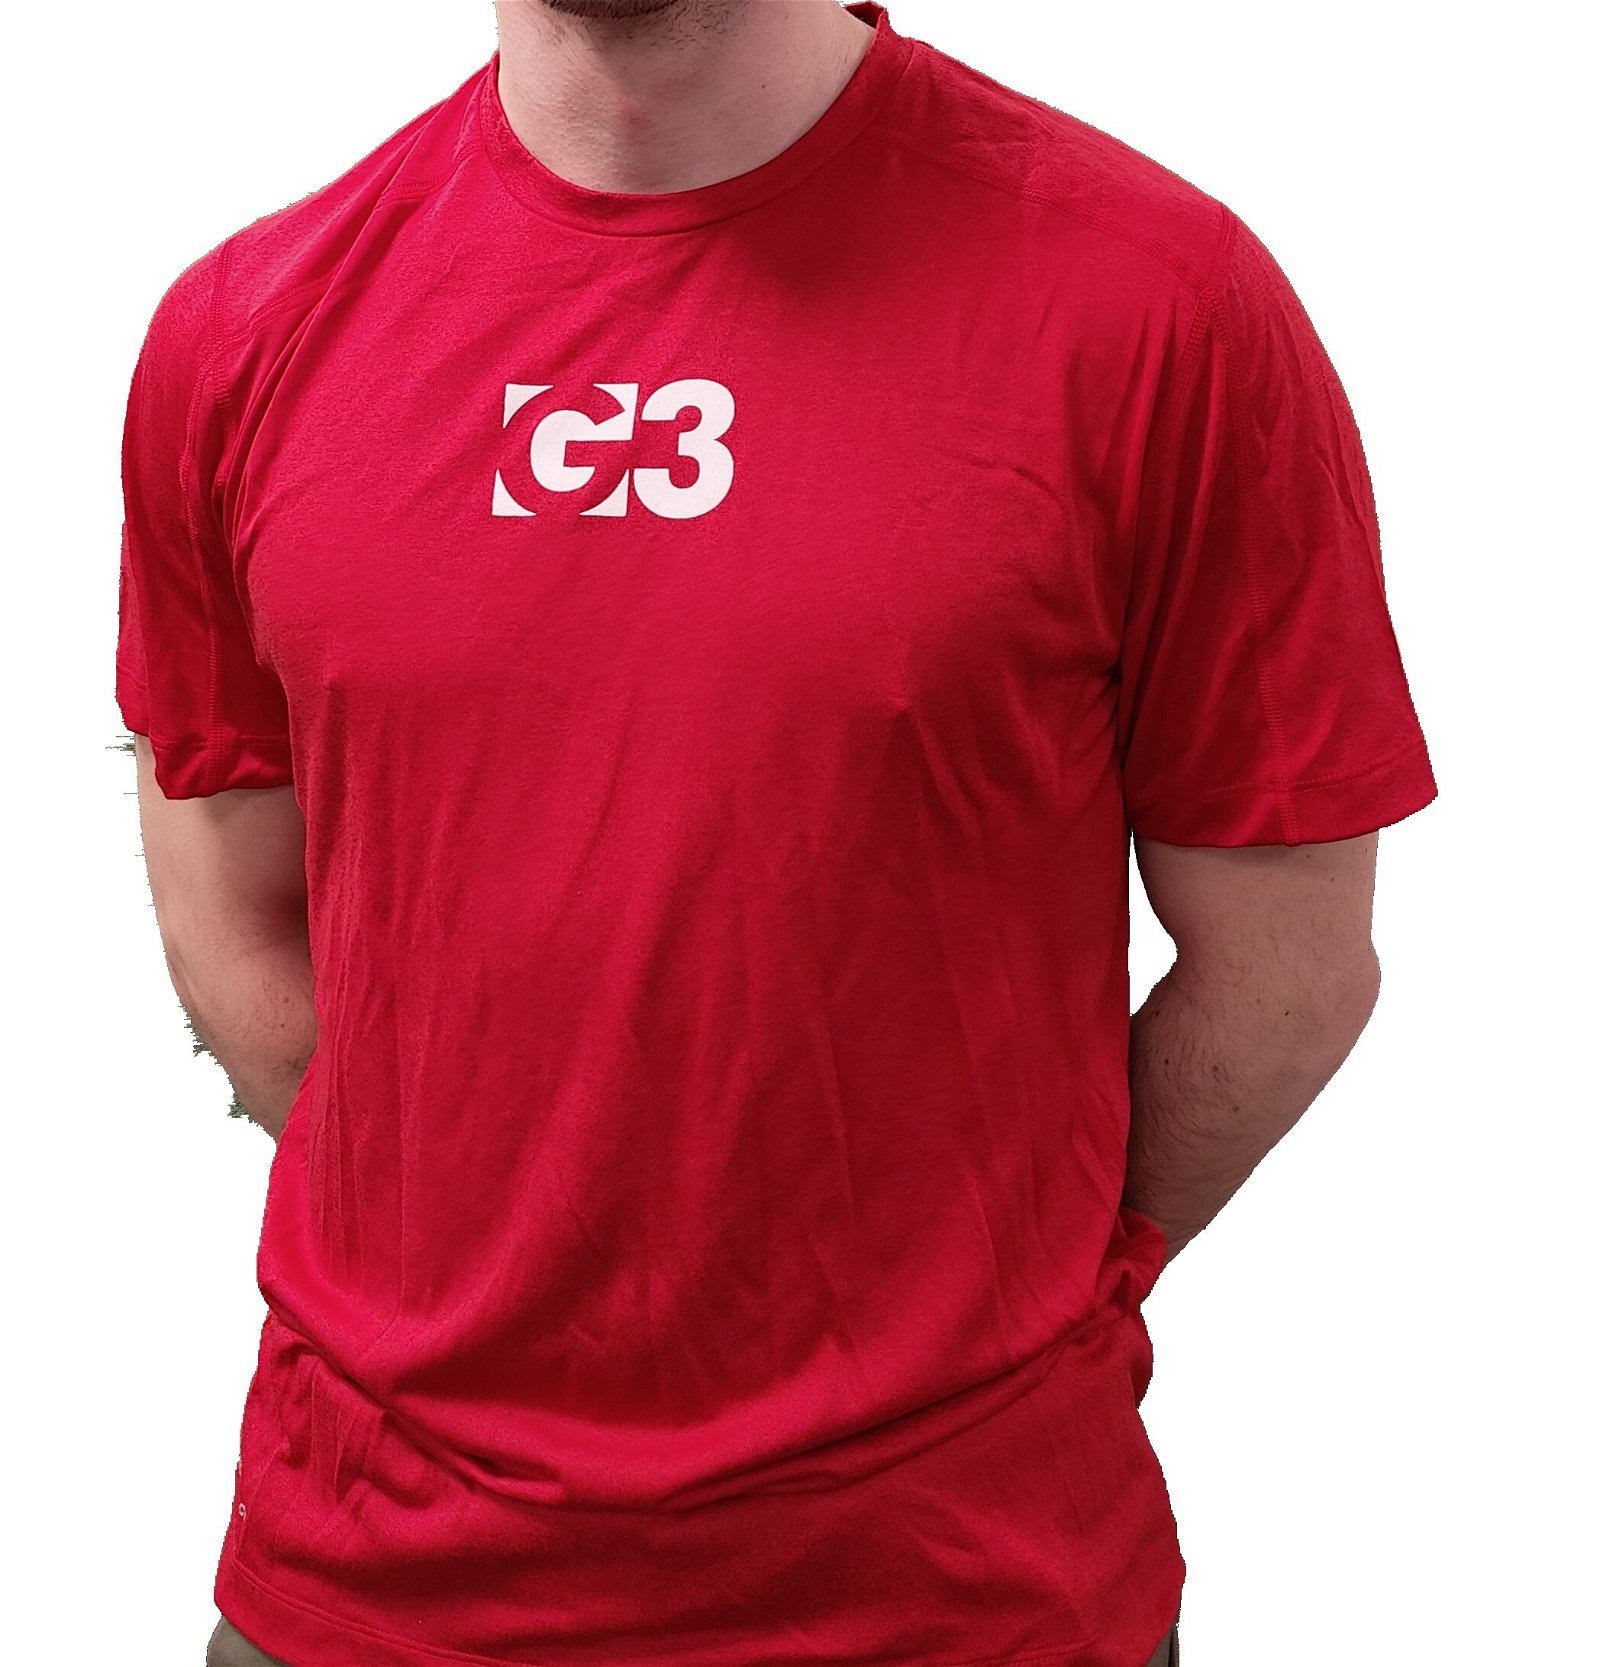 G3 Tech T-Shirt | Promo materiell